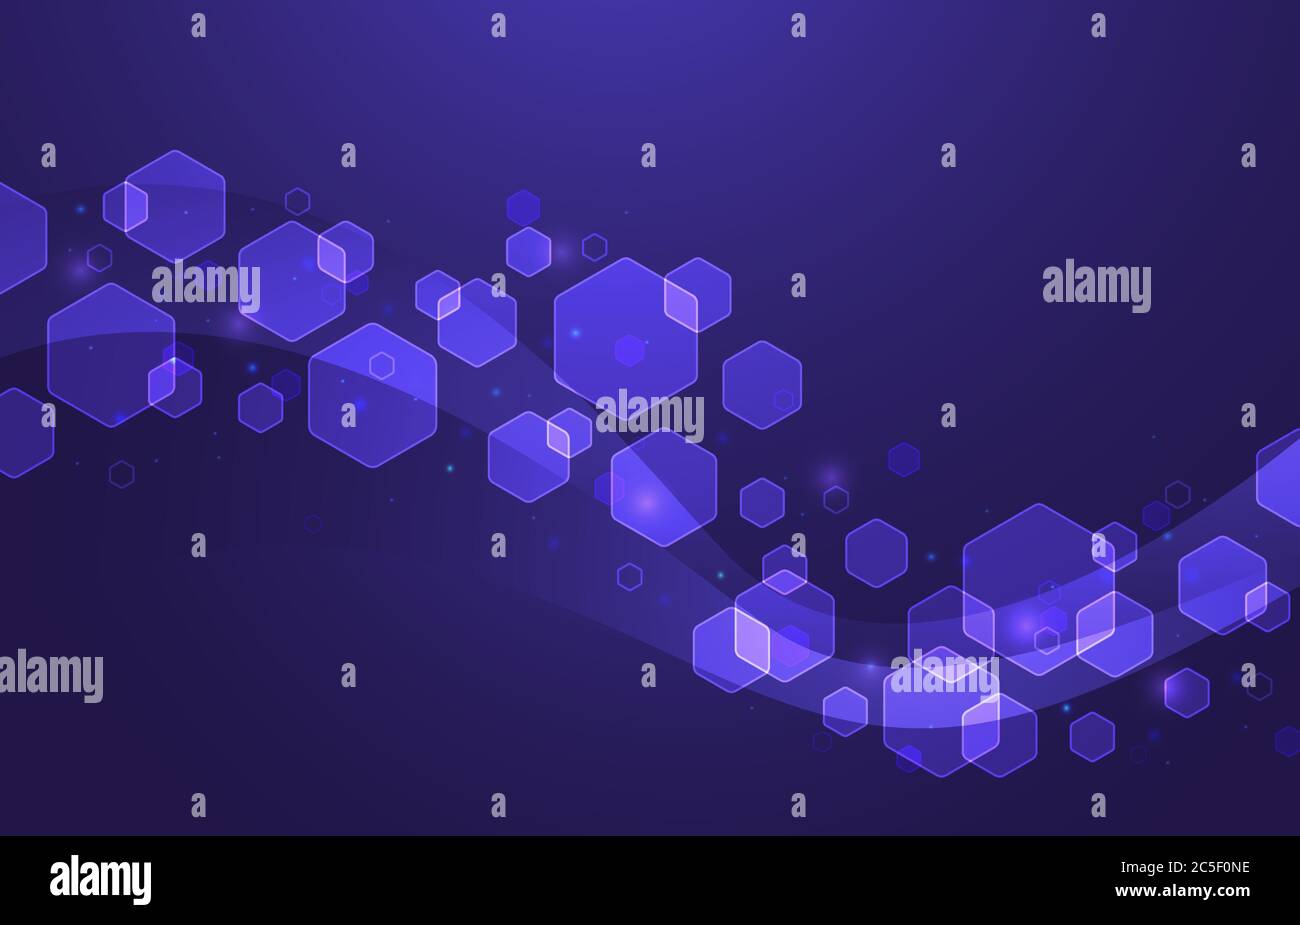 Sechseckige Wellenstruktur. Futuristische geometrische molekulare Zellen Hintergrund, abstrakte Hexagon-Formen und Hexagons Teilchen Vektor-Illustration Stock Vektor